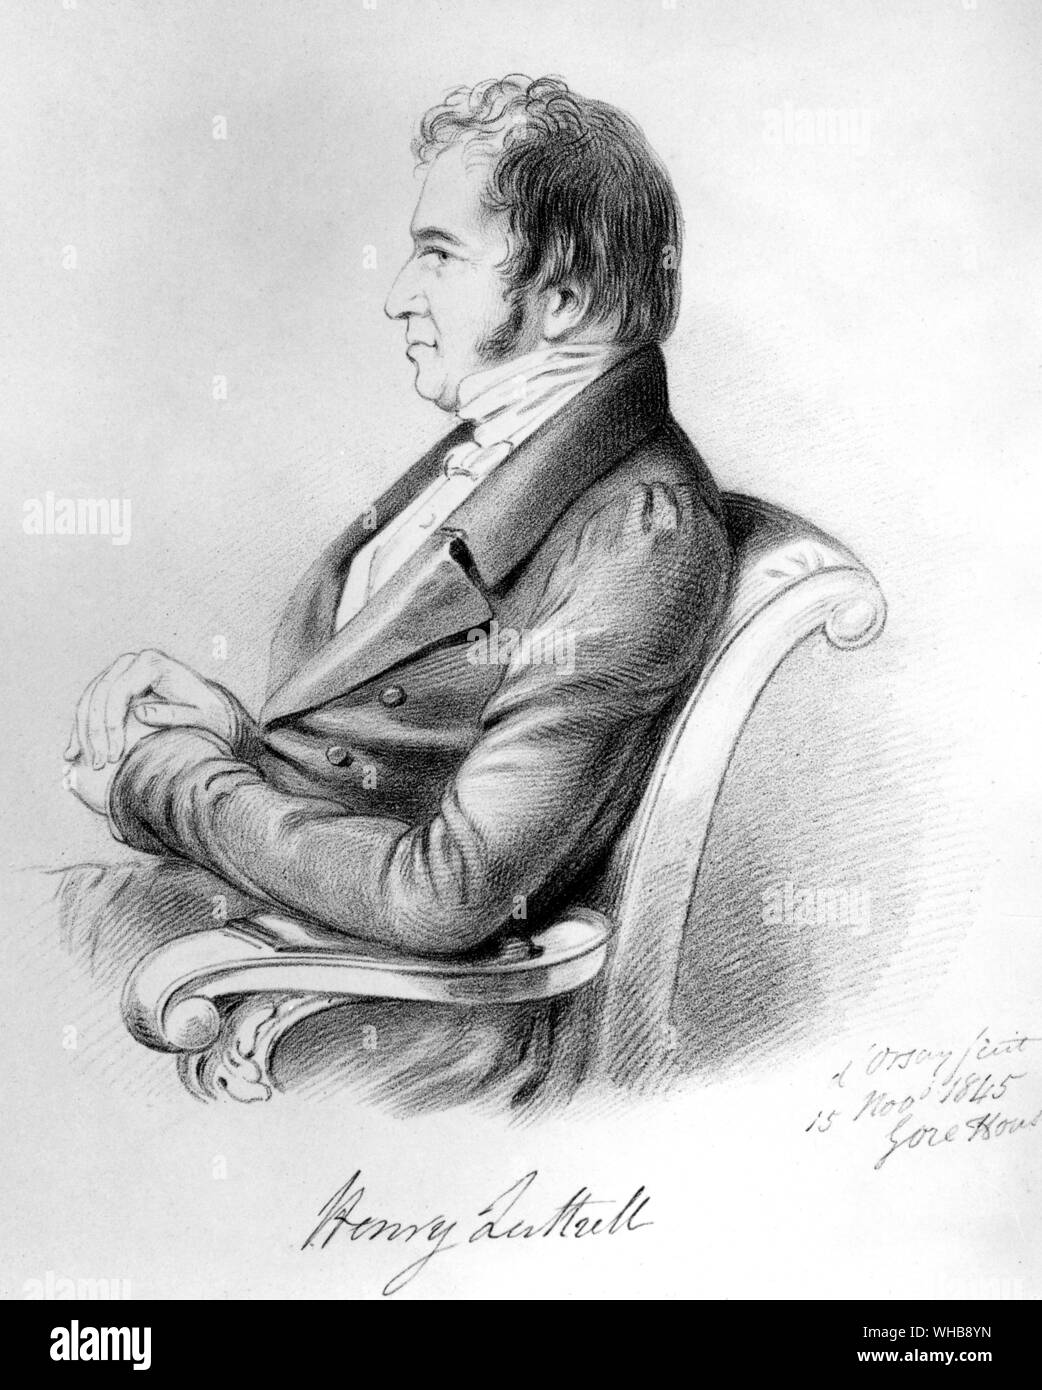 Henry Luttrell, 1845, nach Count d'Orsay - Gravur im British Museum, London (Print) (J. R. Freeman) - Henry Luttrell (C. 1765 - 19. Dezember 1851), war ein englischer Witz und Verfasser der Gesellschaft Vers. Er war der uneheliche Sohn von Henry Lawes Luttrell, 2 Graf von Carhampton. Henry Luttrell sicherte einen Sitz im Irish House of Commons in 1798 und einen Posten in der irischen Regierung, die er für eine Rente umgewandelt. In London Gesellschaft eingeführt, seinen Witz machte ihn populär. Schon bald begann er zu schreiben Vers, in der die Eigenheiten des modischen Menschen beschrieben wurden. Stockfoto